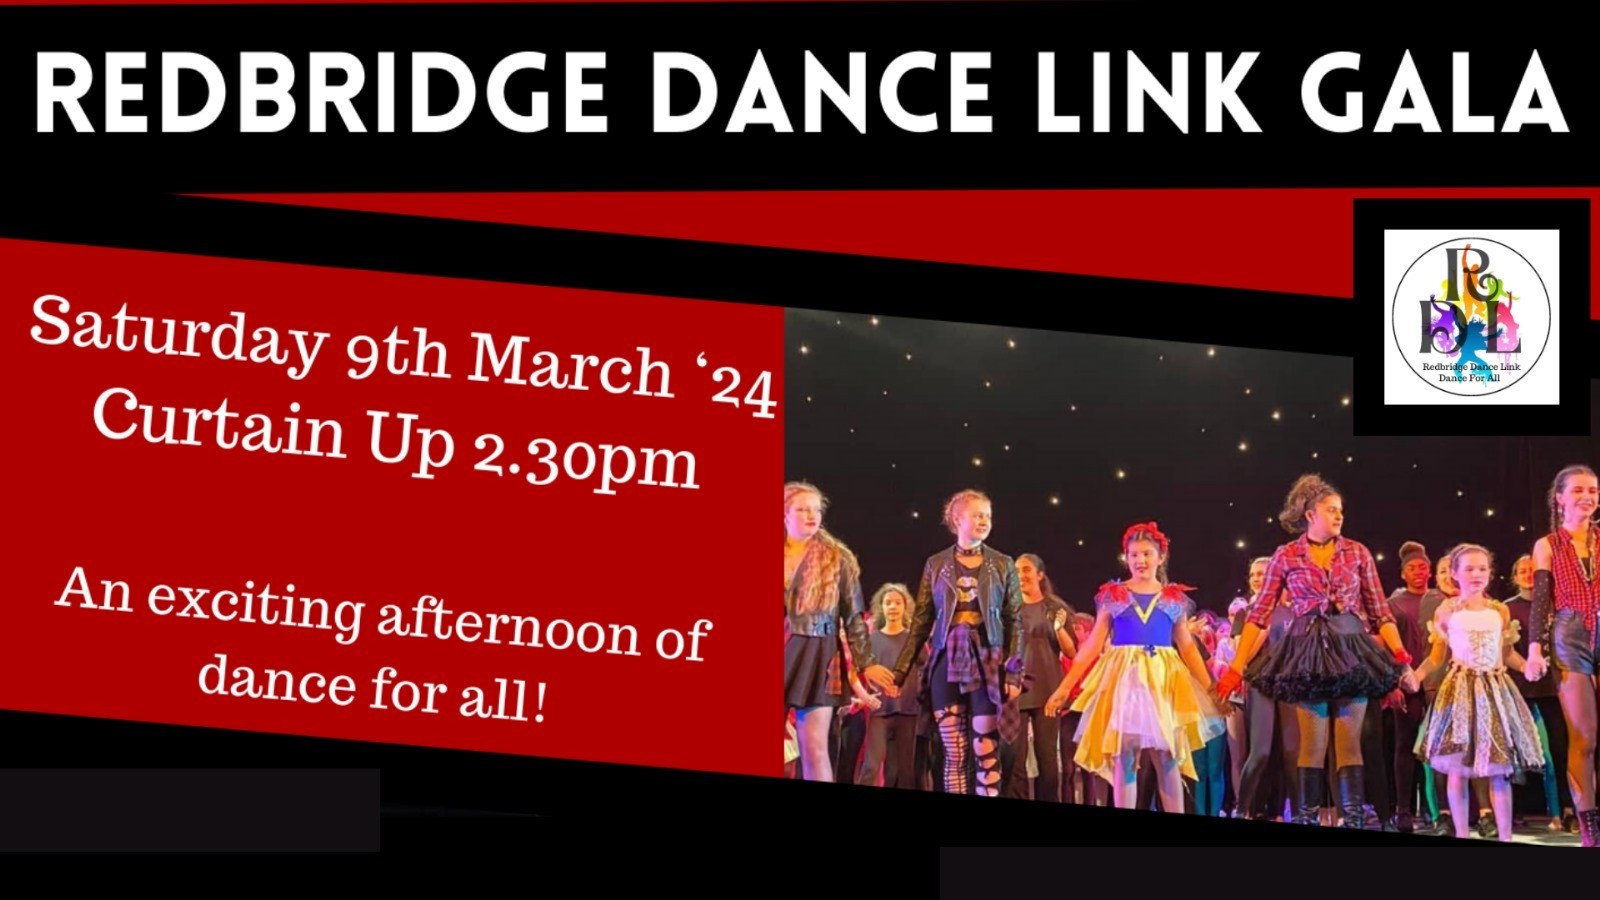 Redbridge Dance Link Gala